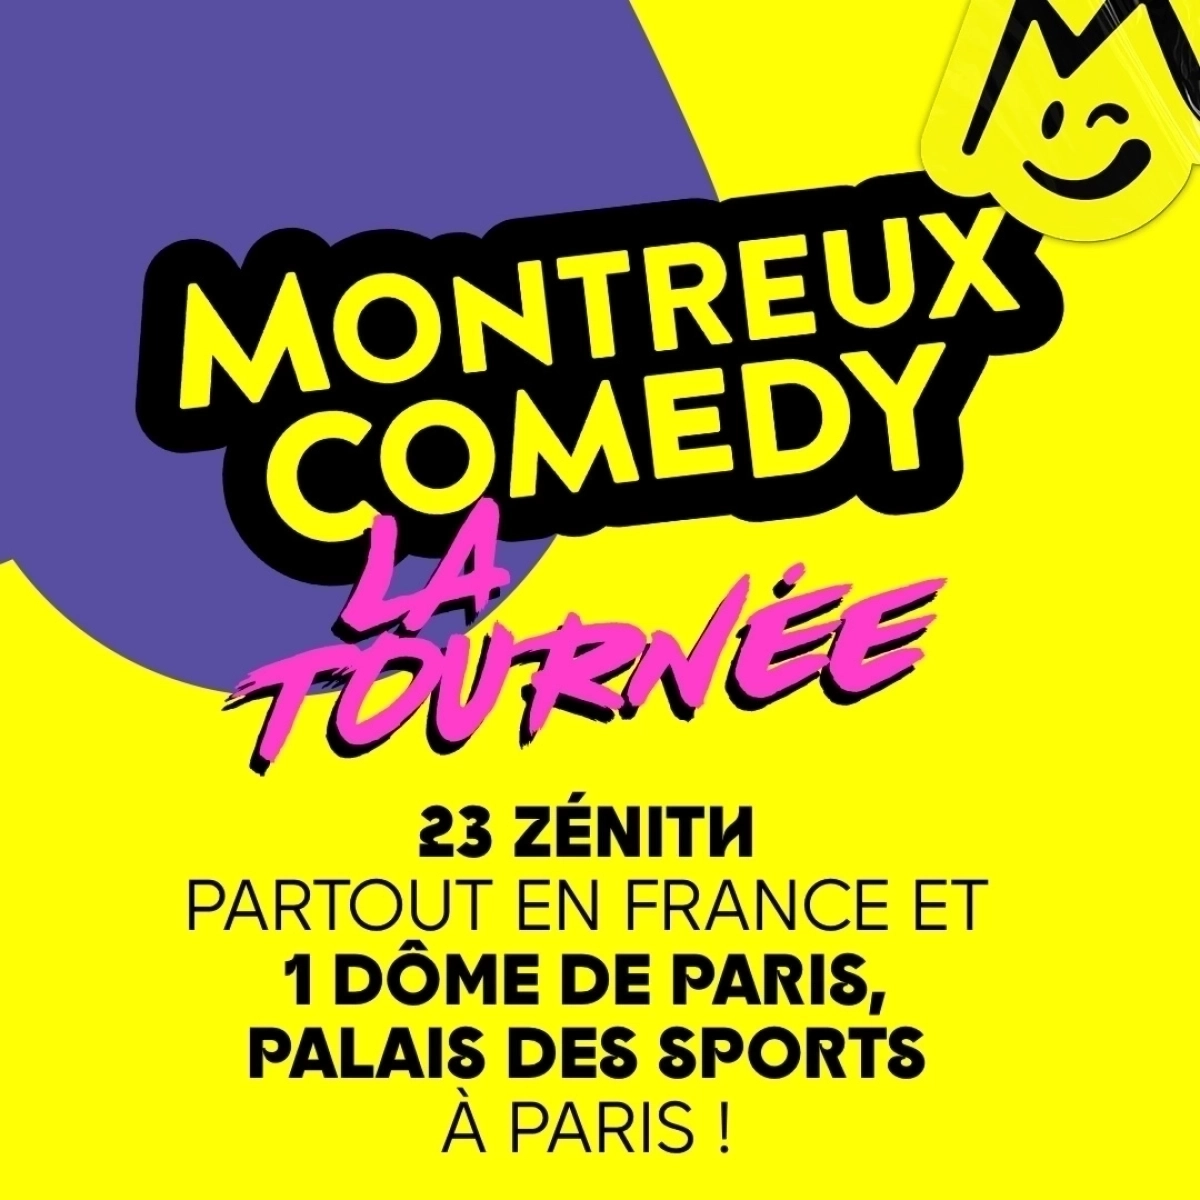 Montreux Comedy - La Tournée al Zenith Montpellier Tickets